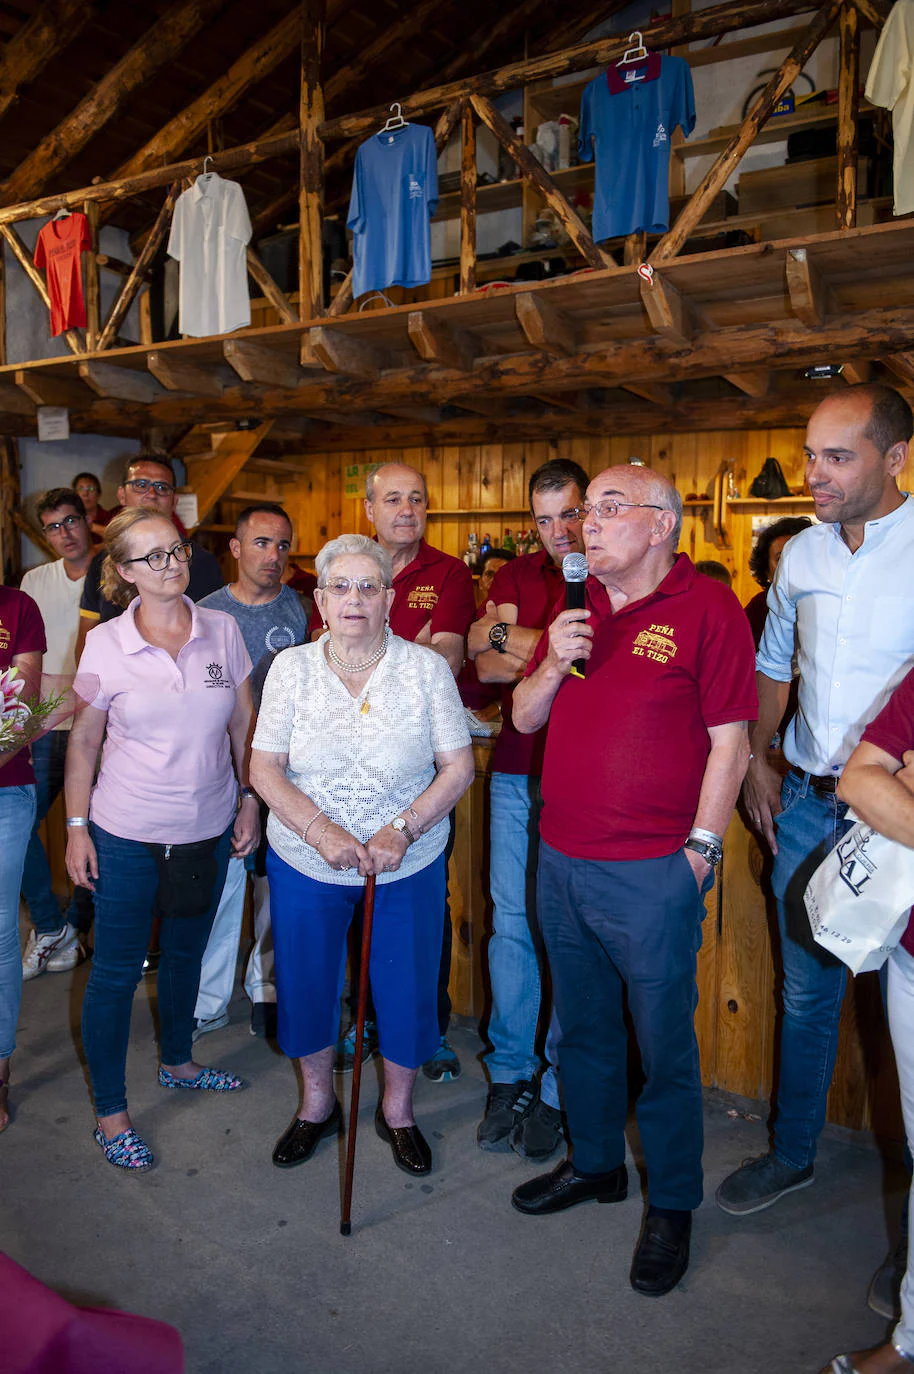 Fotos: Comida homenaje a los jubilados en las fiestas de Valsaín